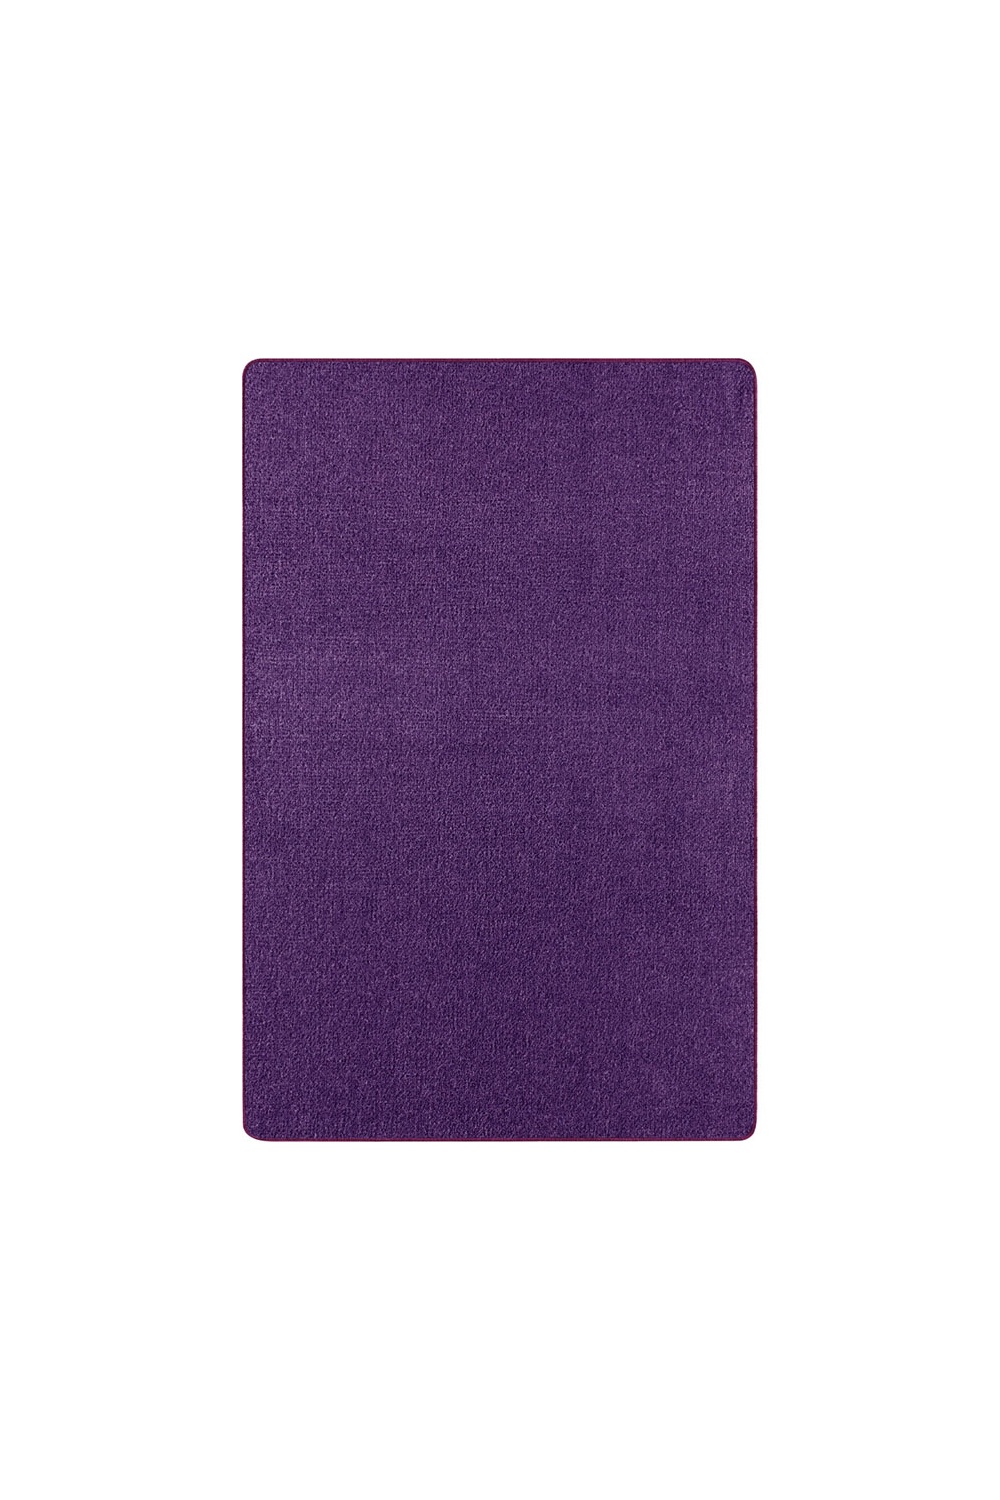 Dywan Fioletowy Kwadratowy Nasty 101150 Purple